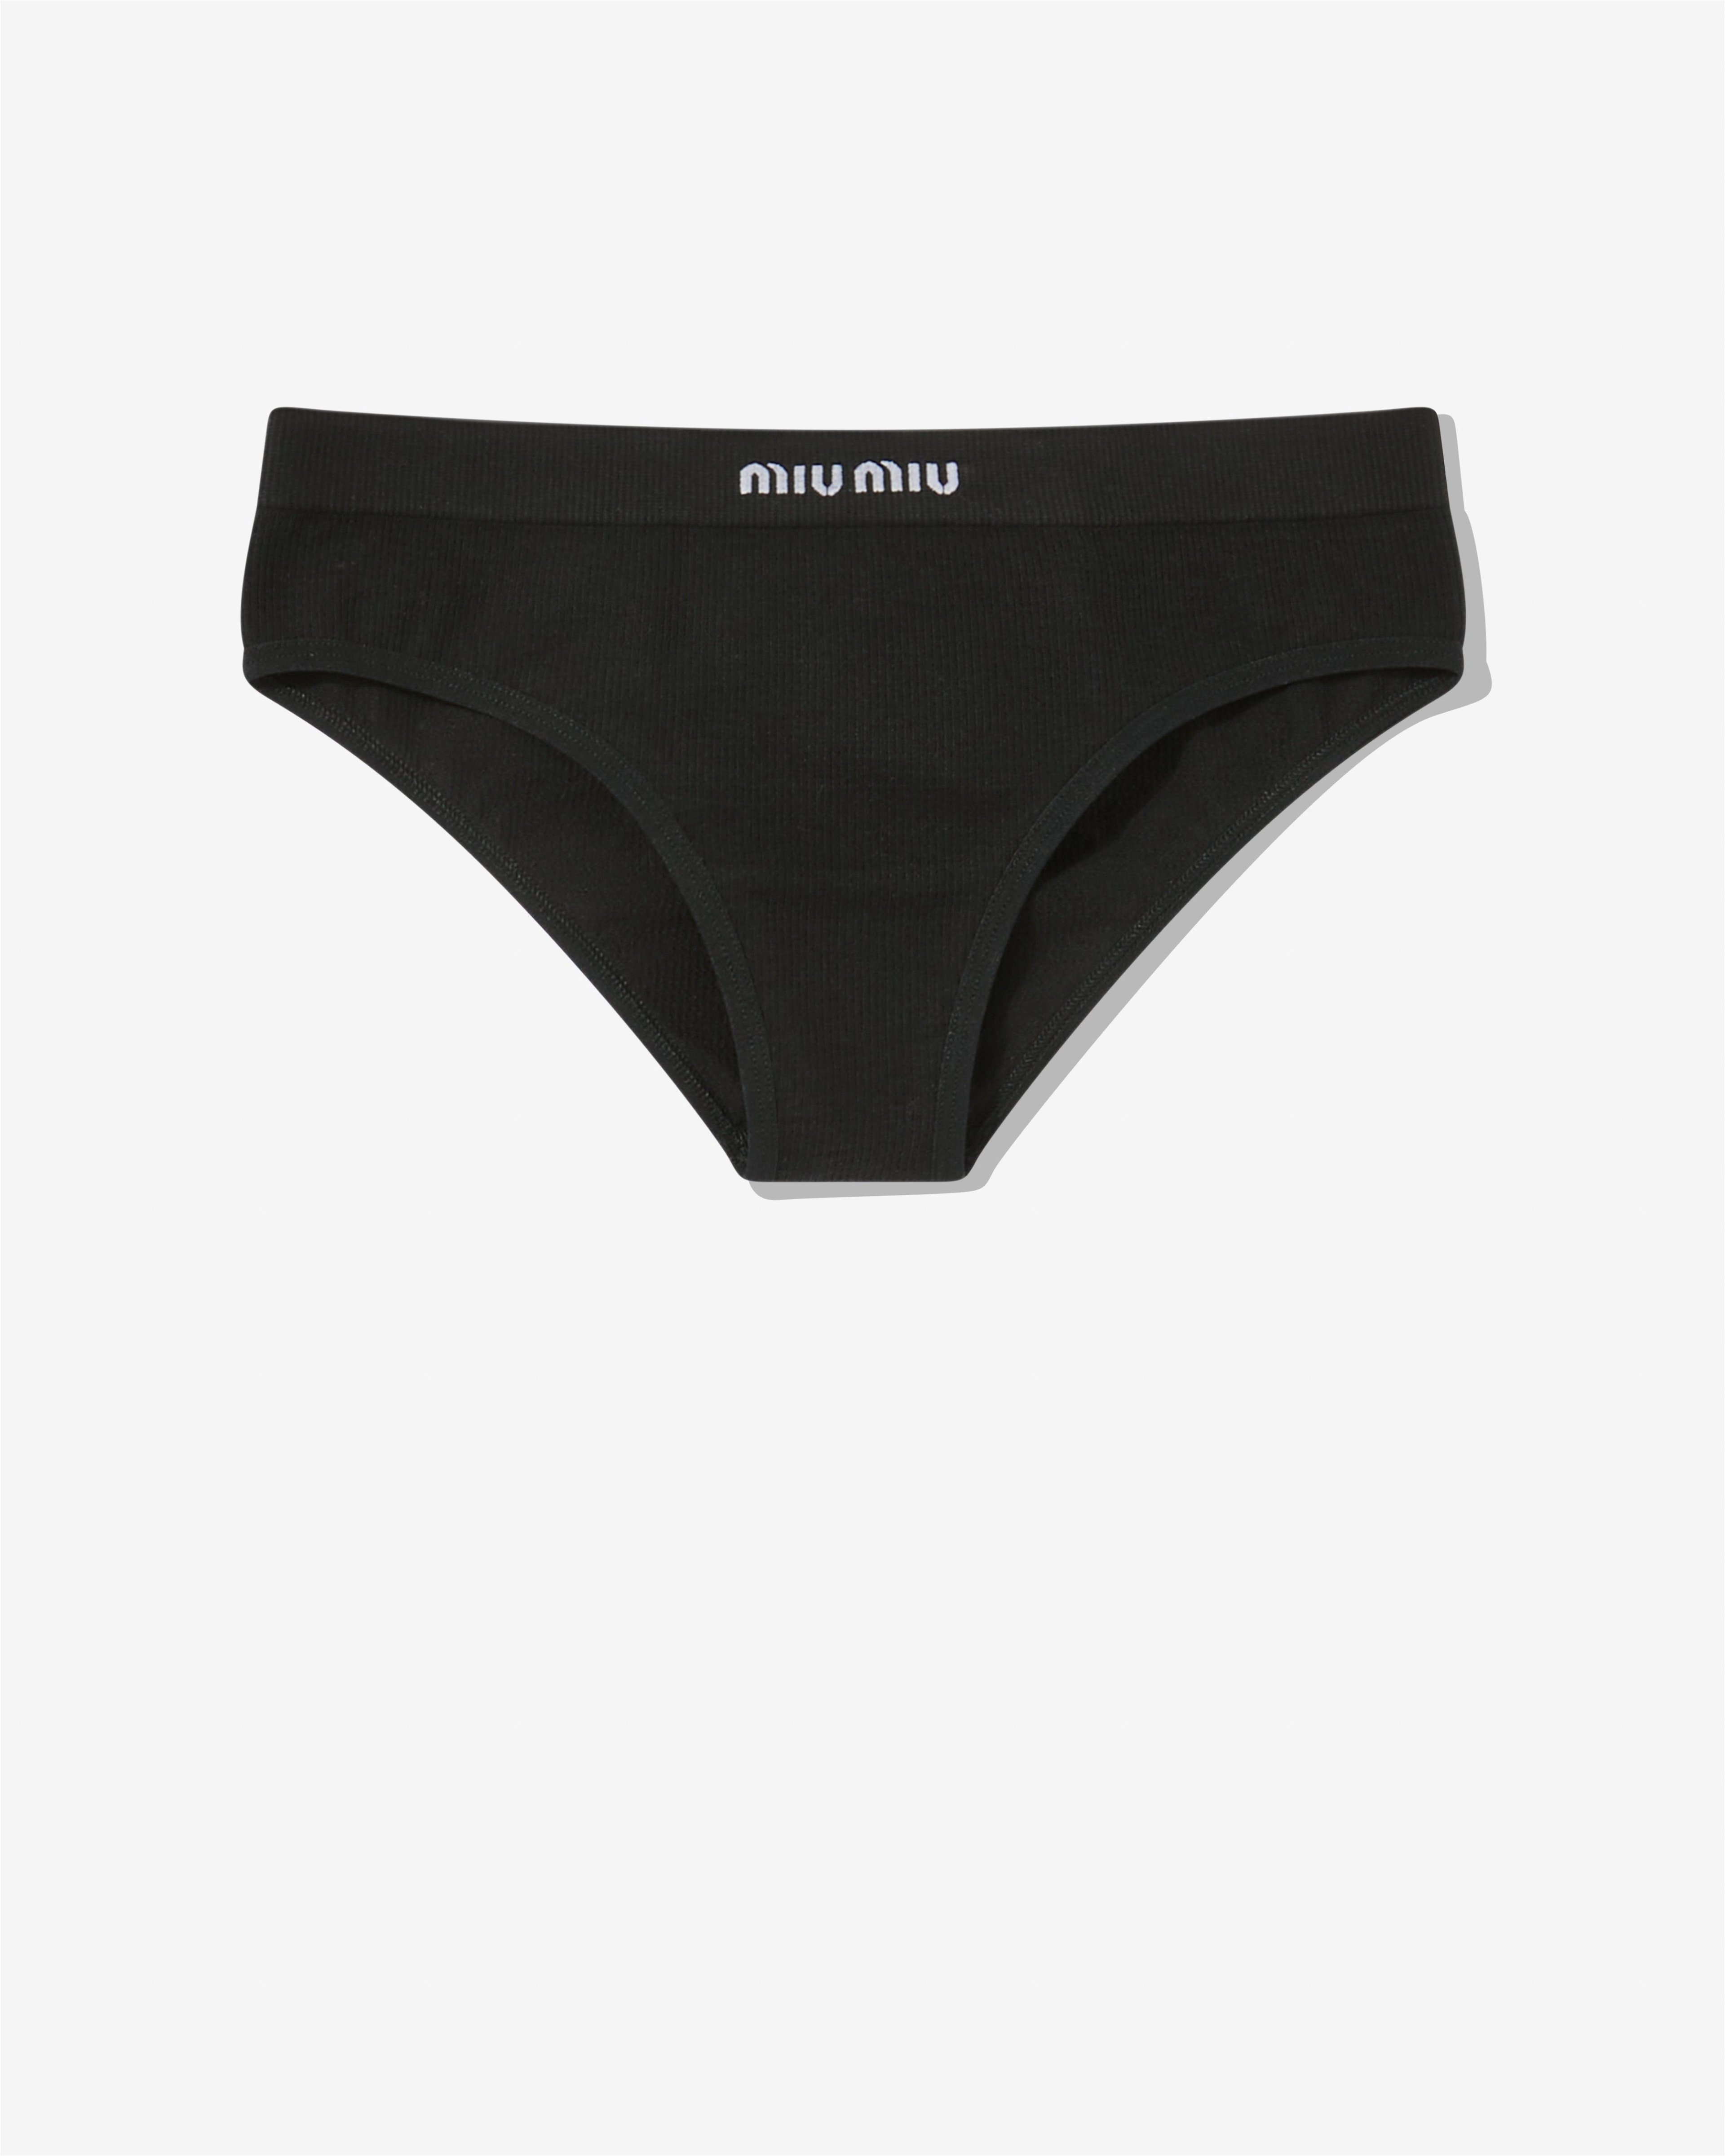 Miu Miu - Women's Seamless Panties - (Black) by MIU MIU